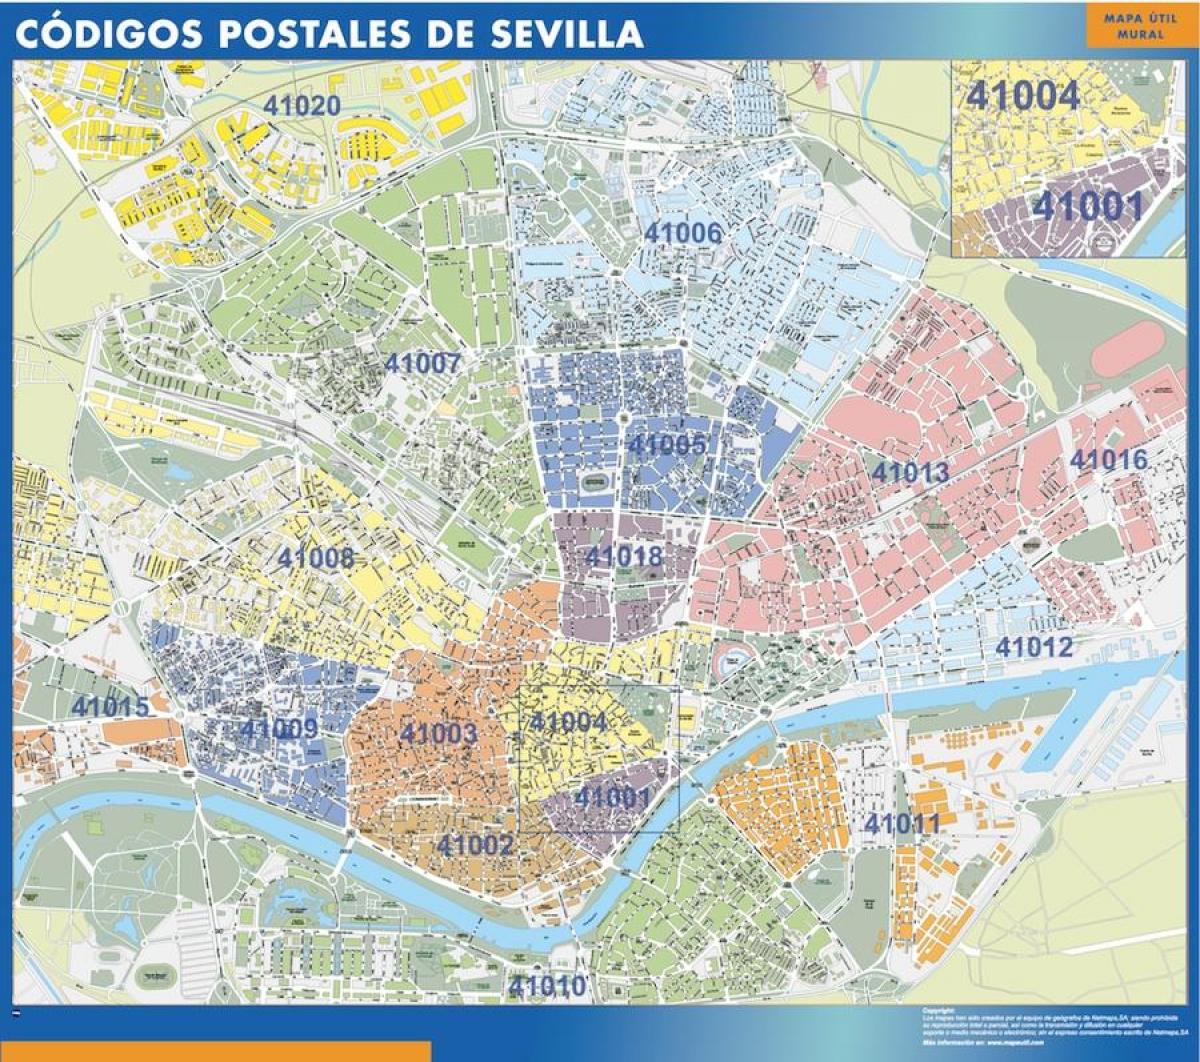 Mappa dei codici di avviamento postale di Siviglia